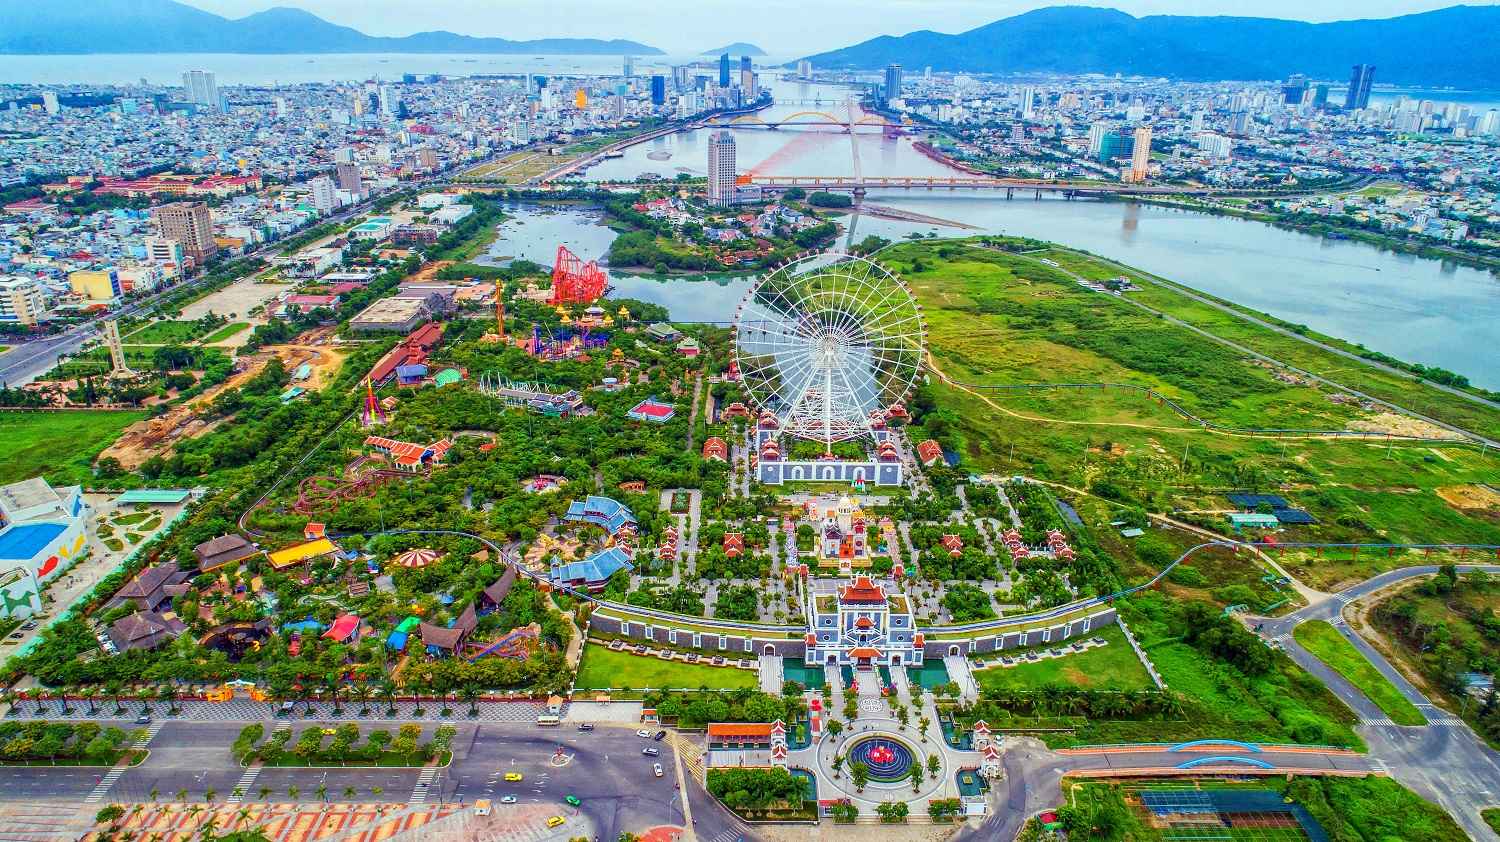 Sun World là khu du lịch vui chơi giải trí lớn tại Việt Nam, với nhiều hoạt động, trò chơi và cảnh quan đẹp mắt. Hãy đến và khám phá một thế giới đầy màu sắc, được bao phủ bởi ánh nắng và sức sống của thiên nhiên.